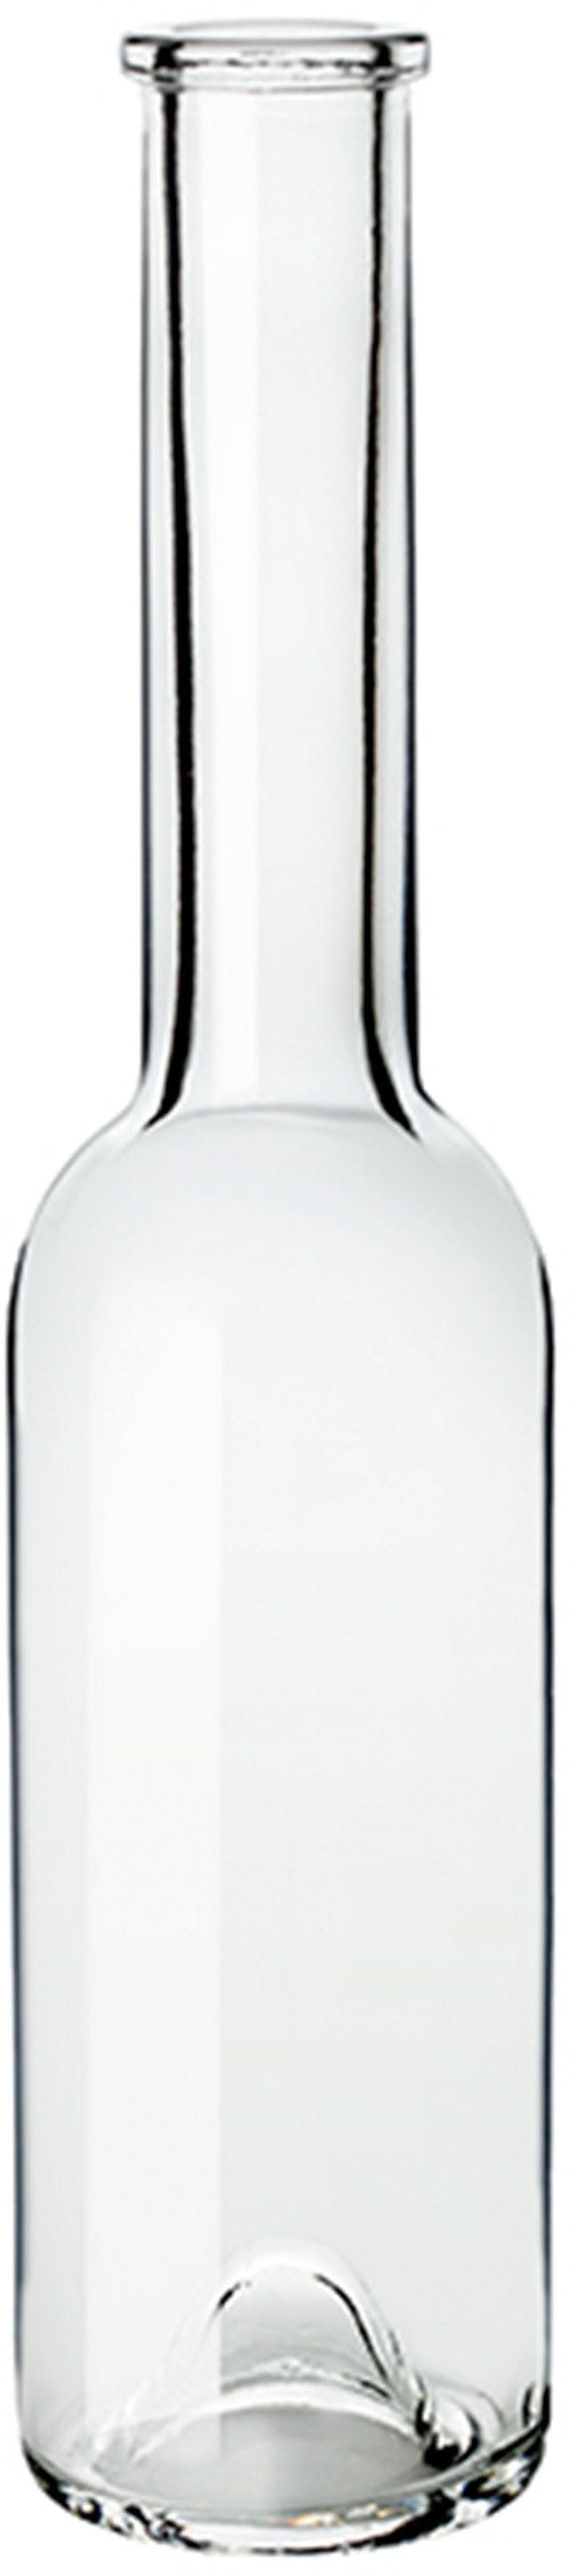 Bottiglia SINFONIA  OPERA 200 ml BG-Sughero